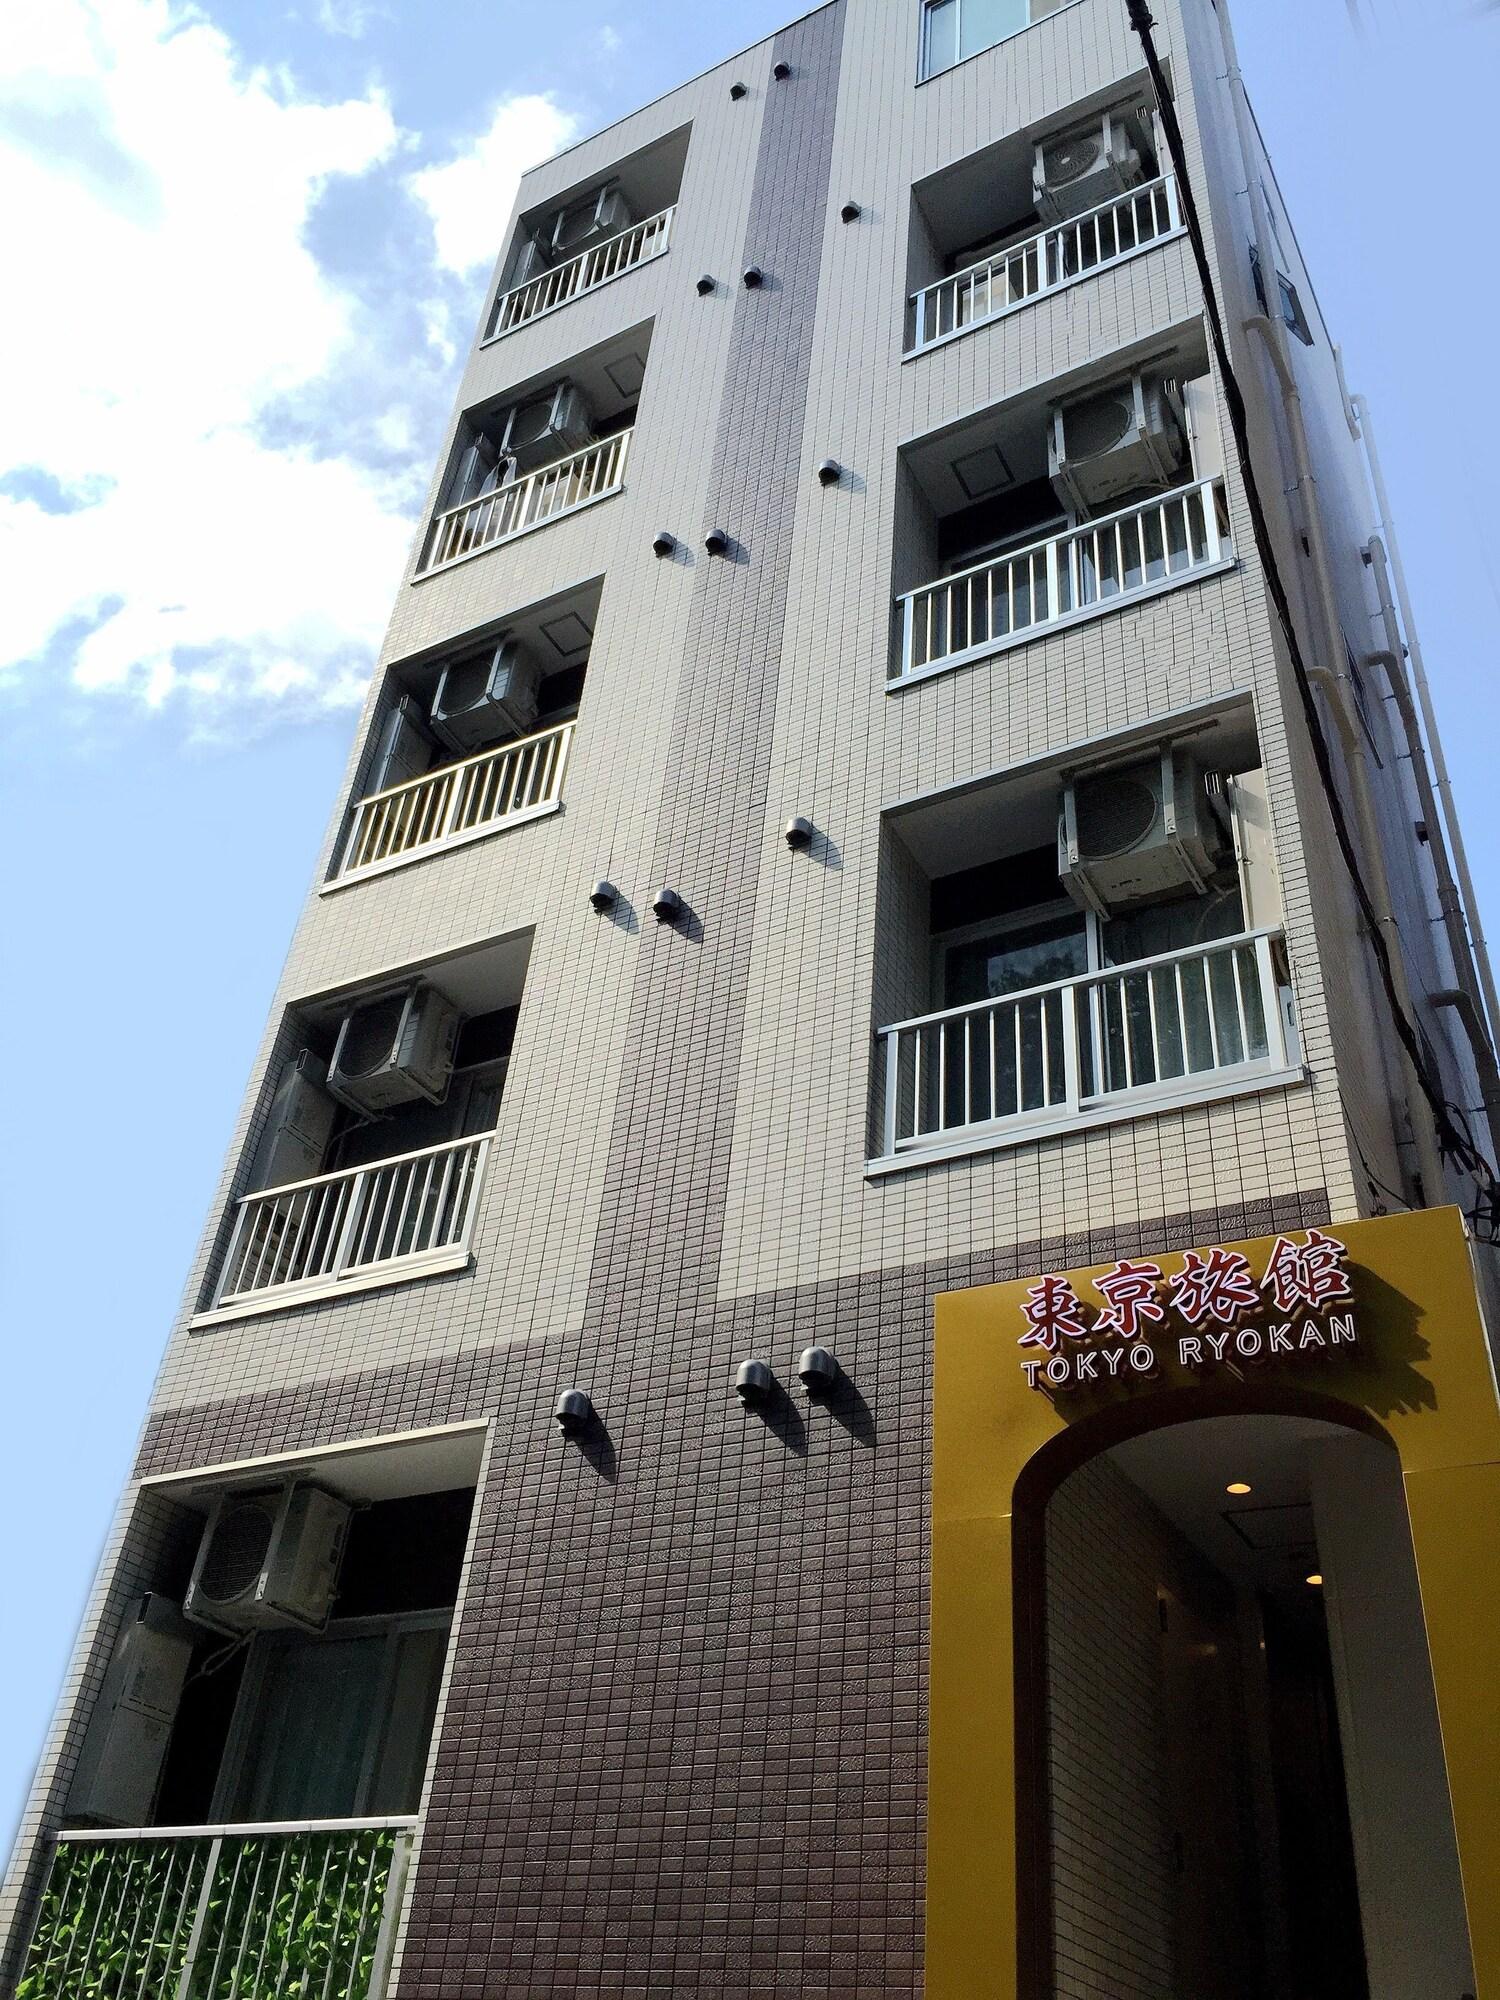 Vista da fachada Tokyo Ryokan